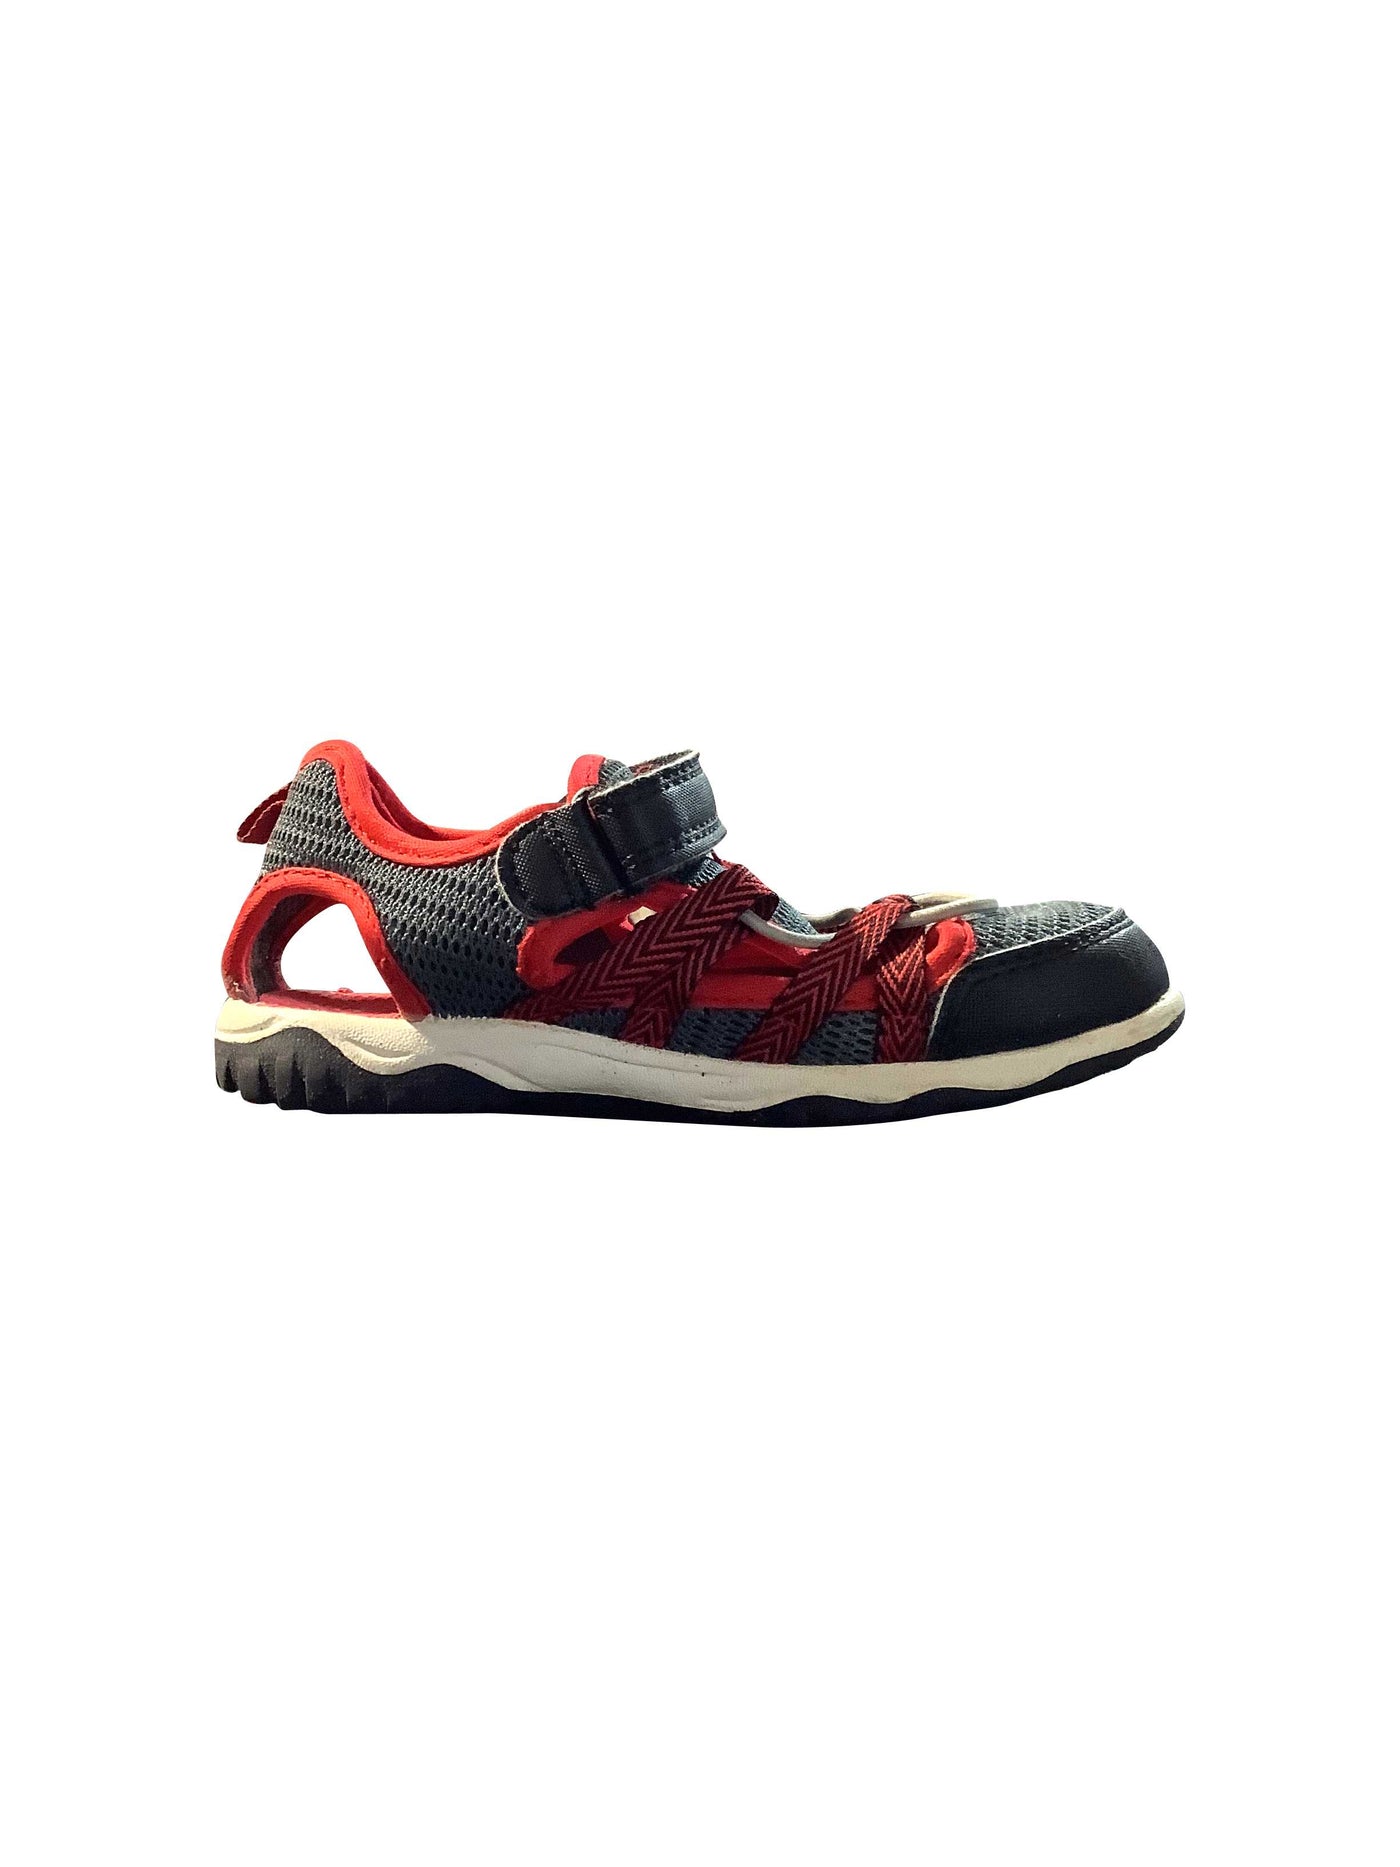 UNBRANDED Regular fit Sandals in Red - 11   Koop